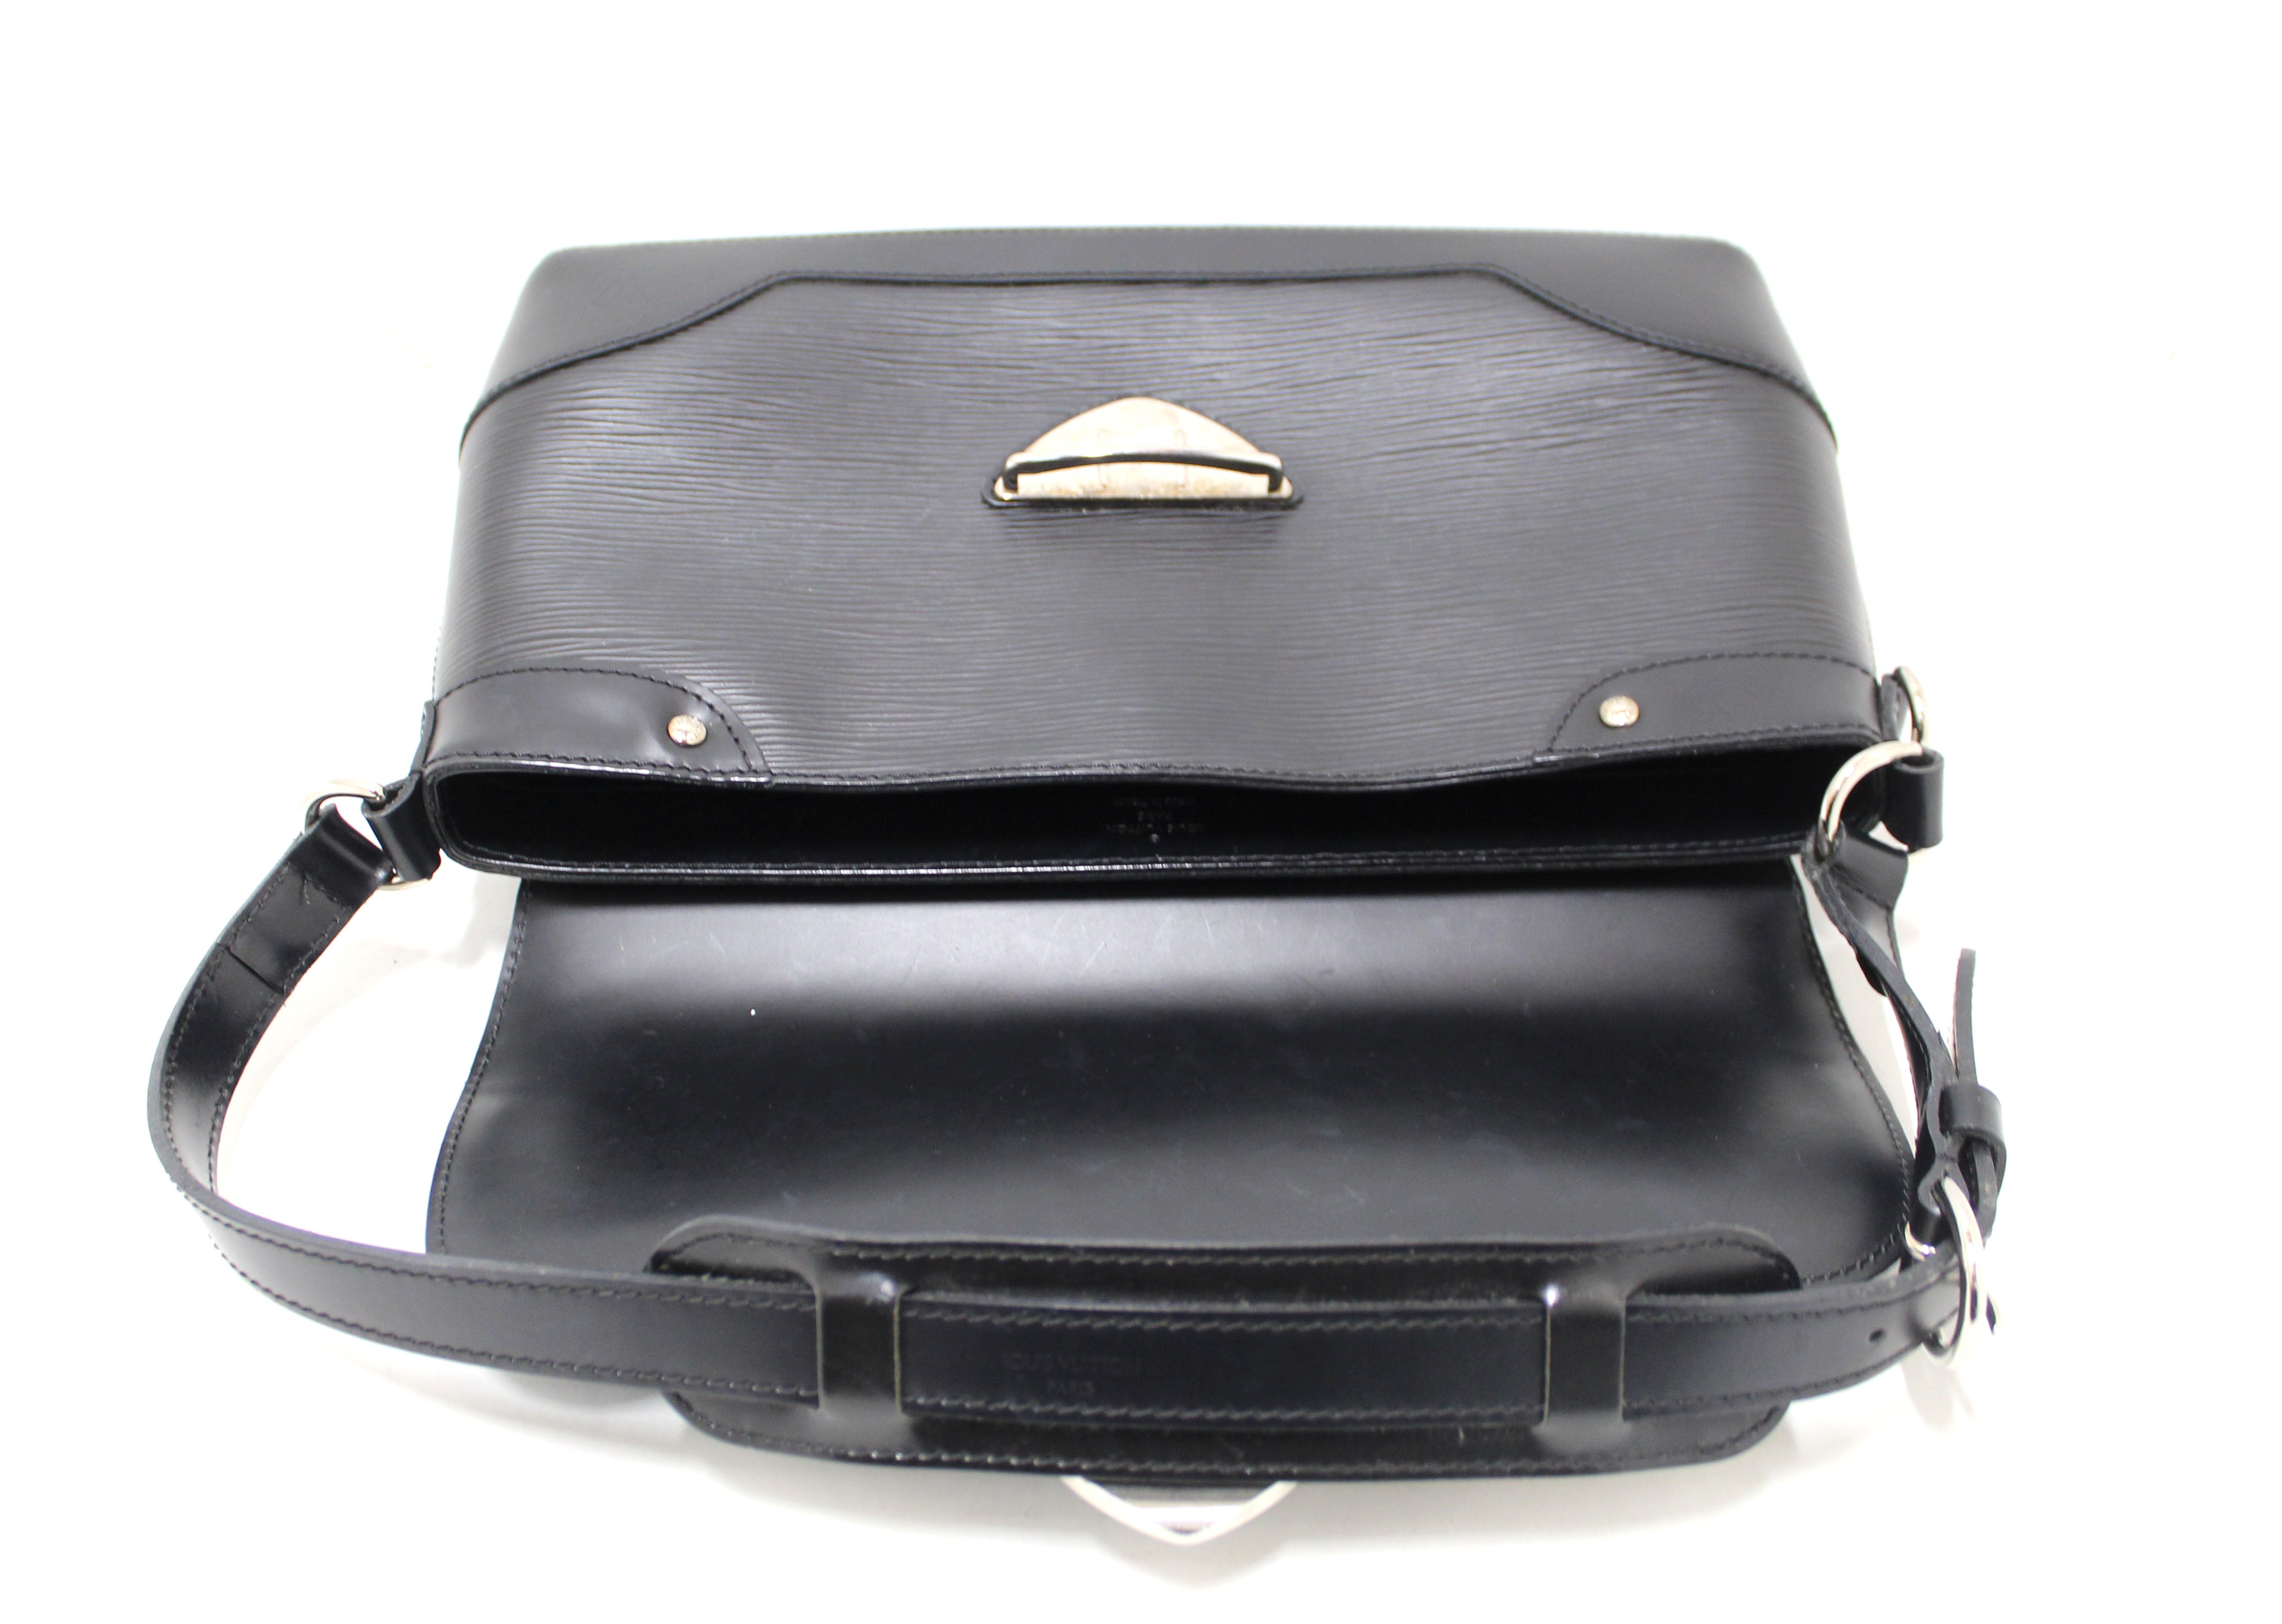 Authentic Louis Vuitton Black Epi Leather Bagatelle PM Shoulder Bag